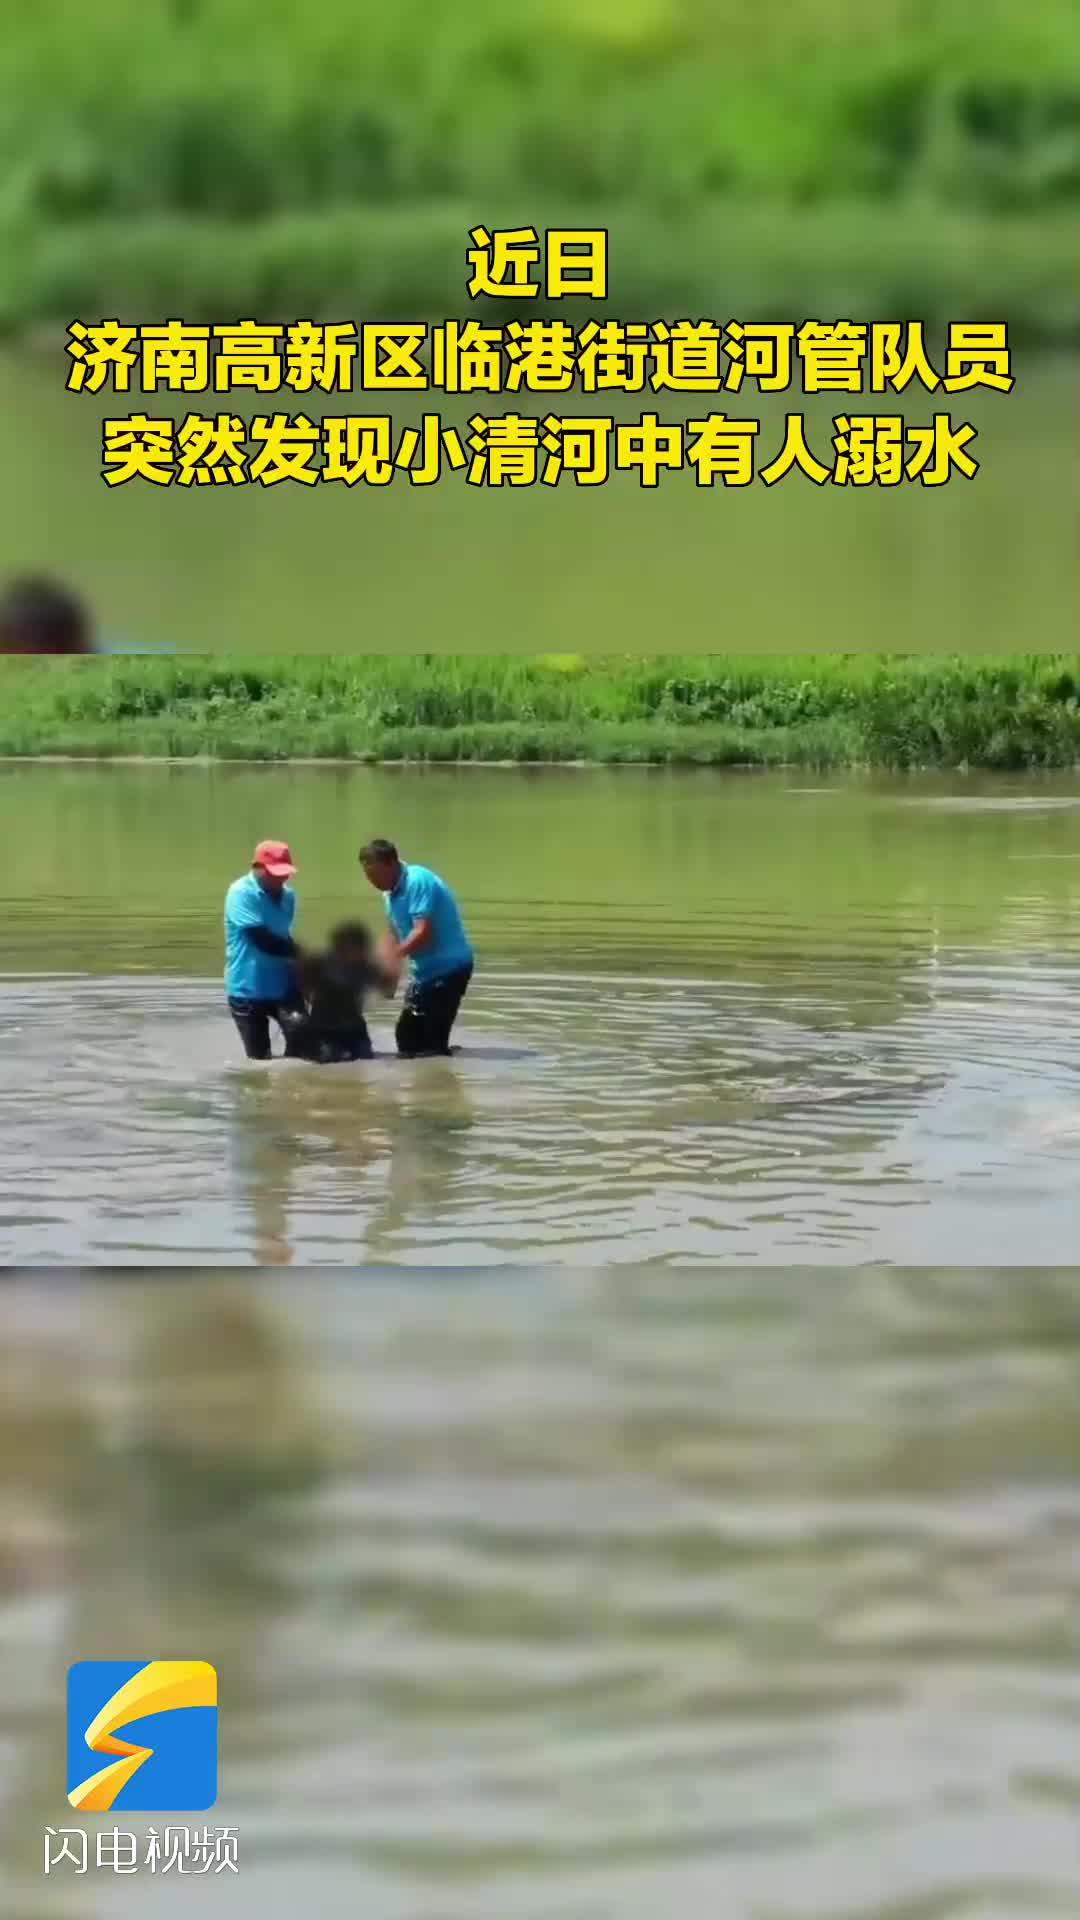 天气炎热 小心溺水！济南高新区临港街道河管队员解救溺水女孩